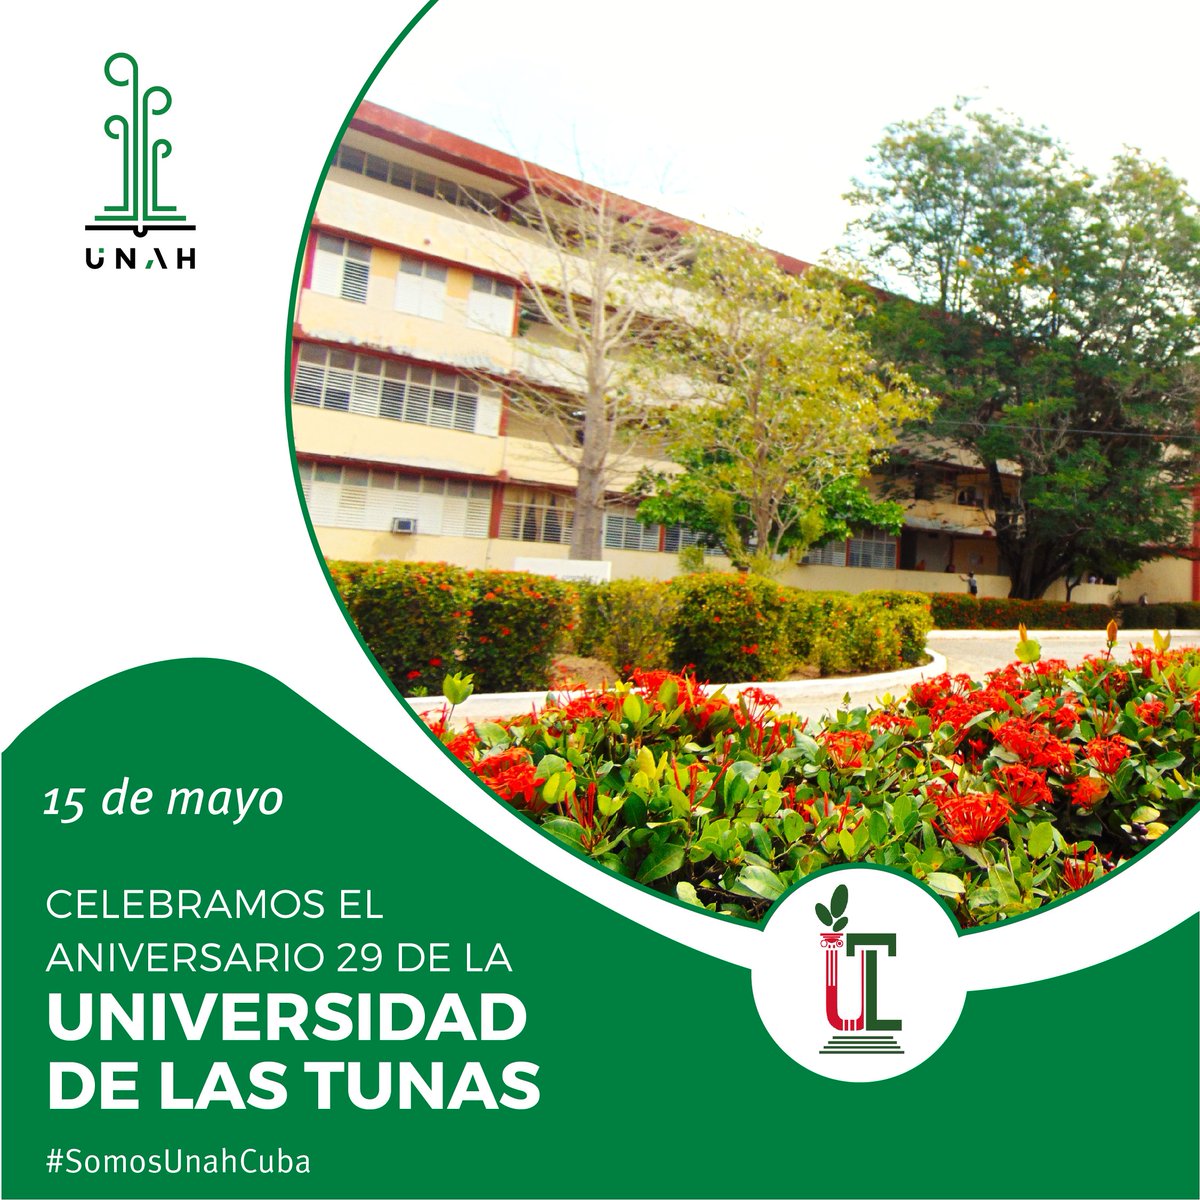 🌱🇨🇺 Felicitamos a la @ULTCuba en su Aniversario 29. 

Muchos éxitos a toda la comunidad universitaria. 

#SomosUnahCuba #UniversidadCubana